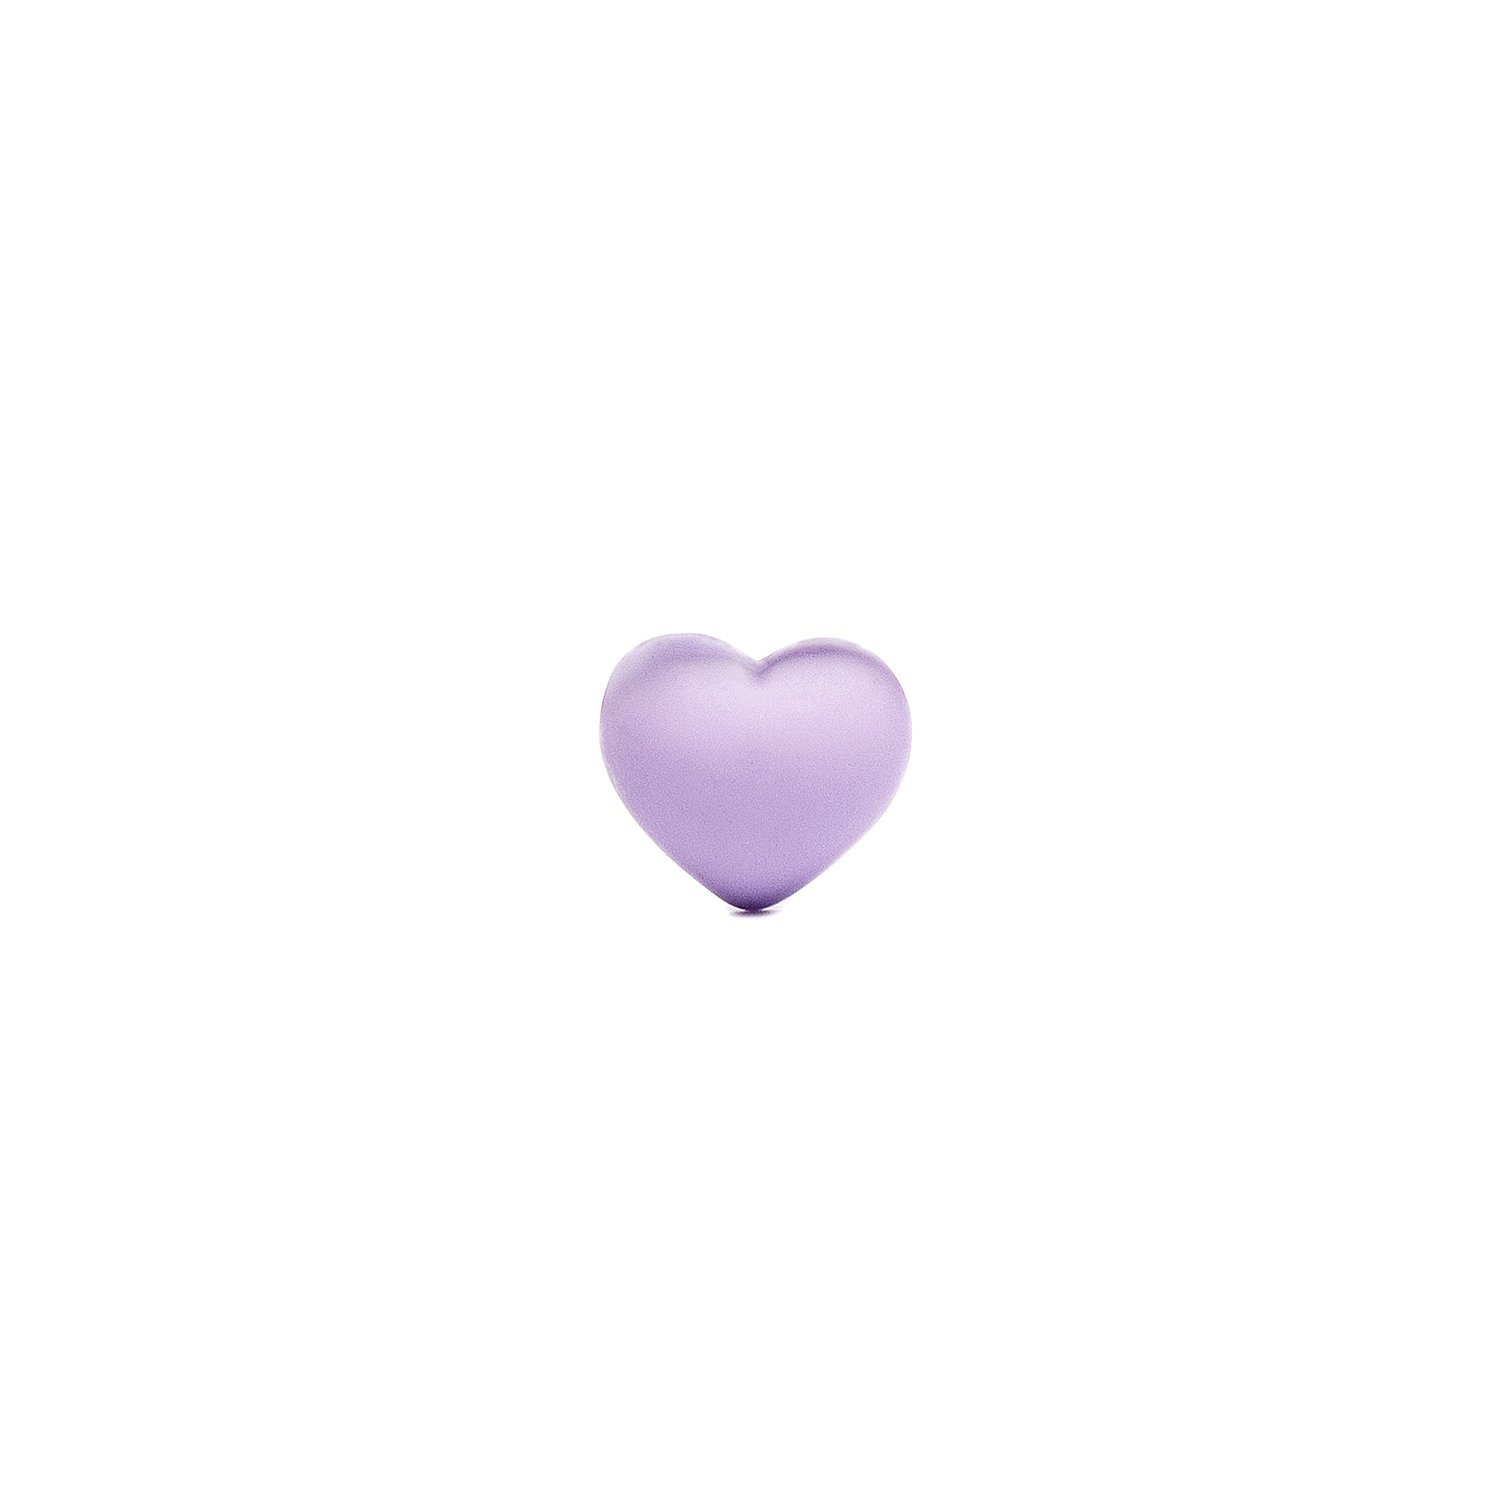 Наклейка MiZi Сердце для смартфона, светло-фиолетовый 05 (218454)